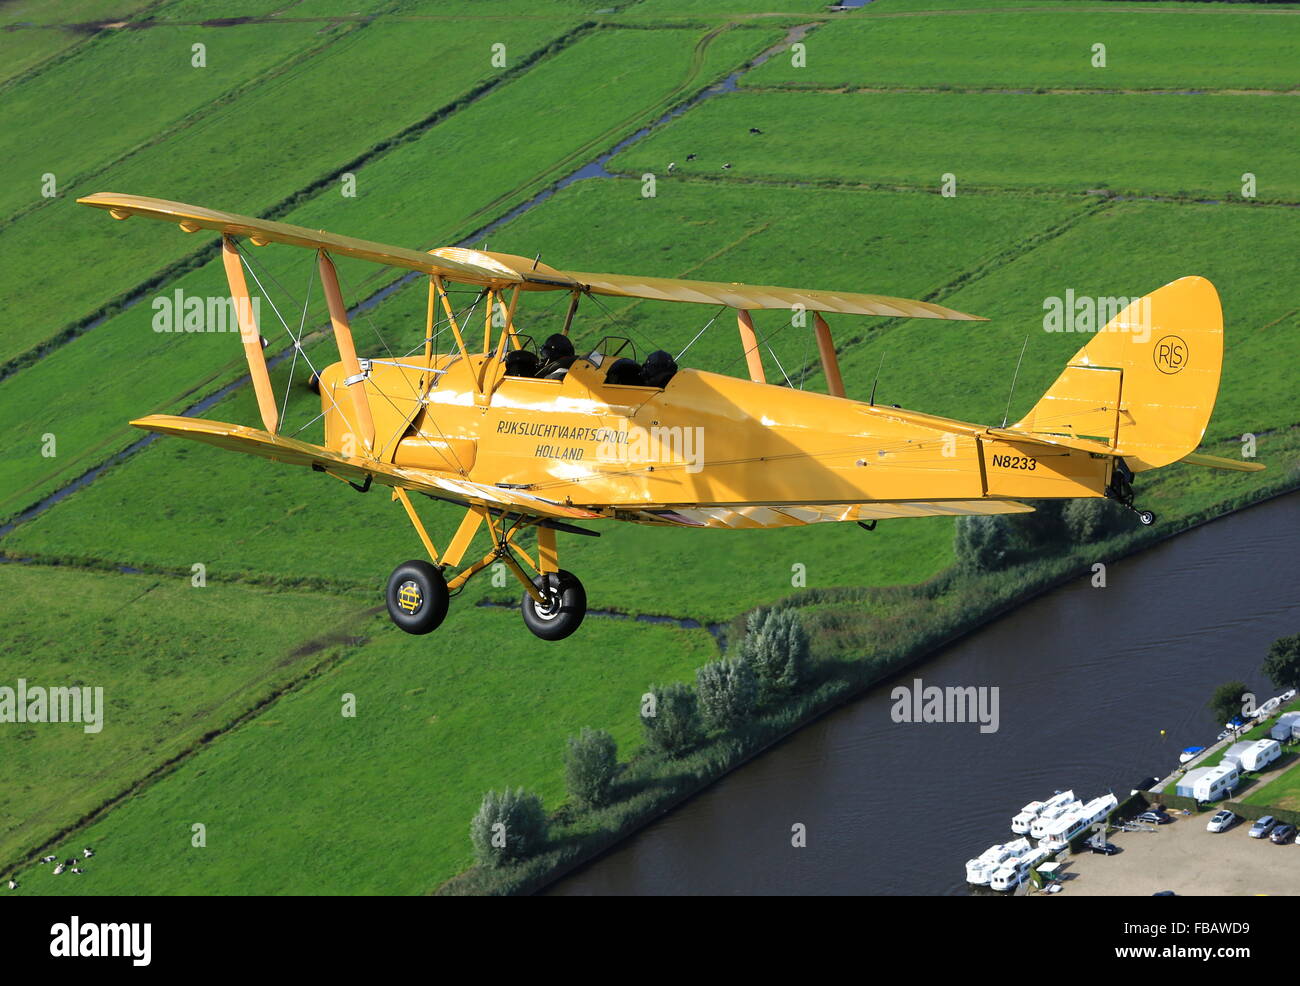 A de Havilland Tiger Moth bi-plane over the Dutch countryside Stock Photo